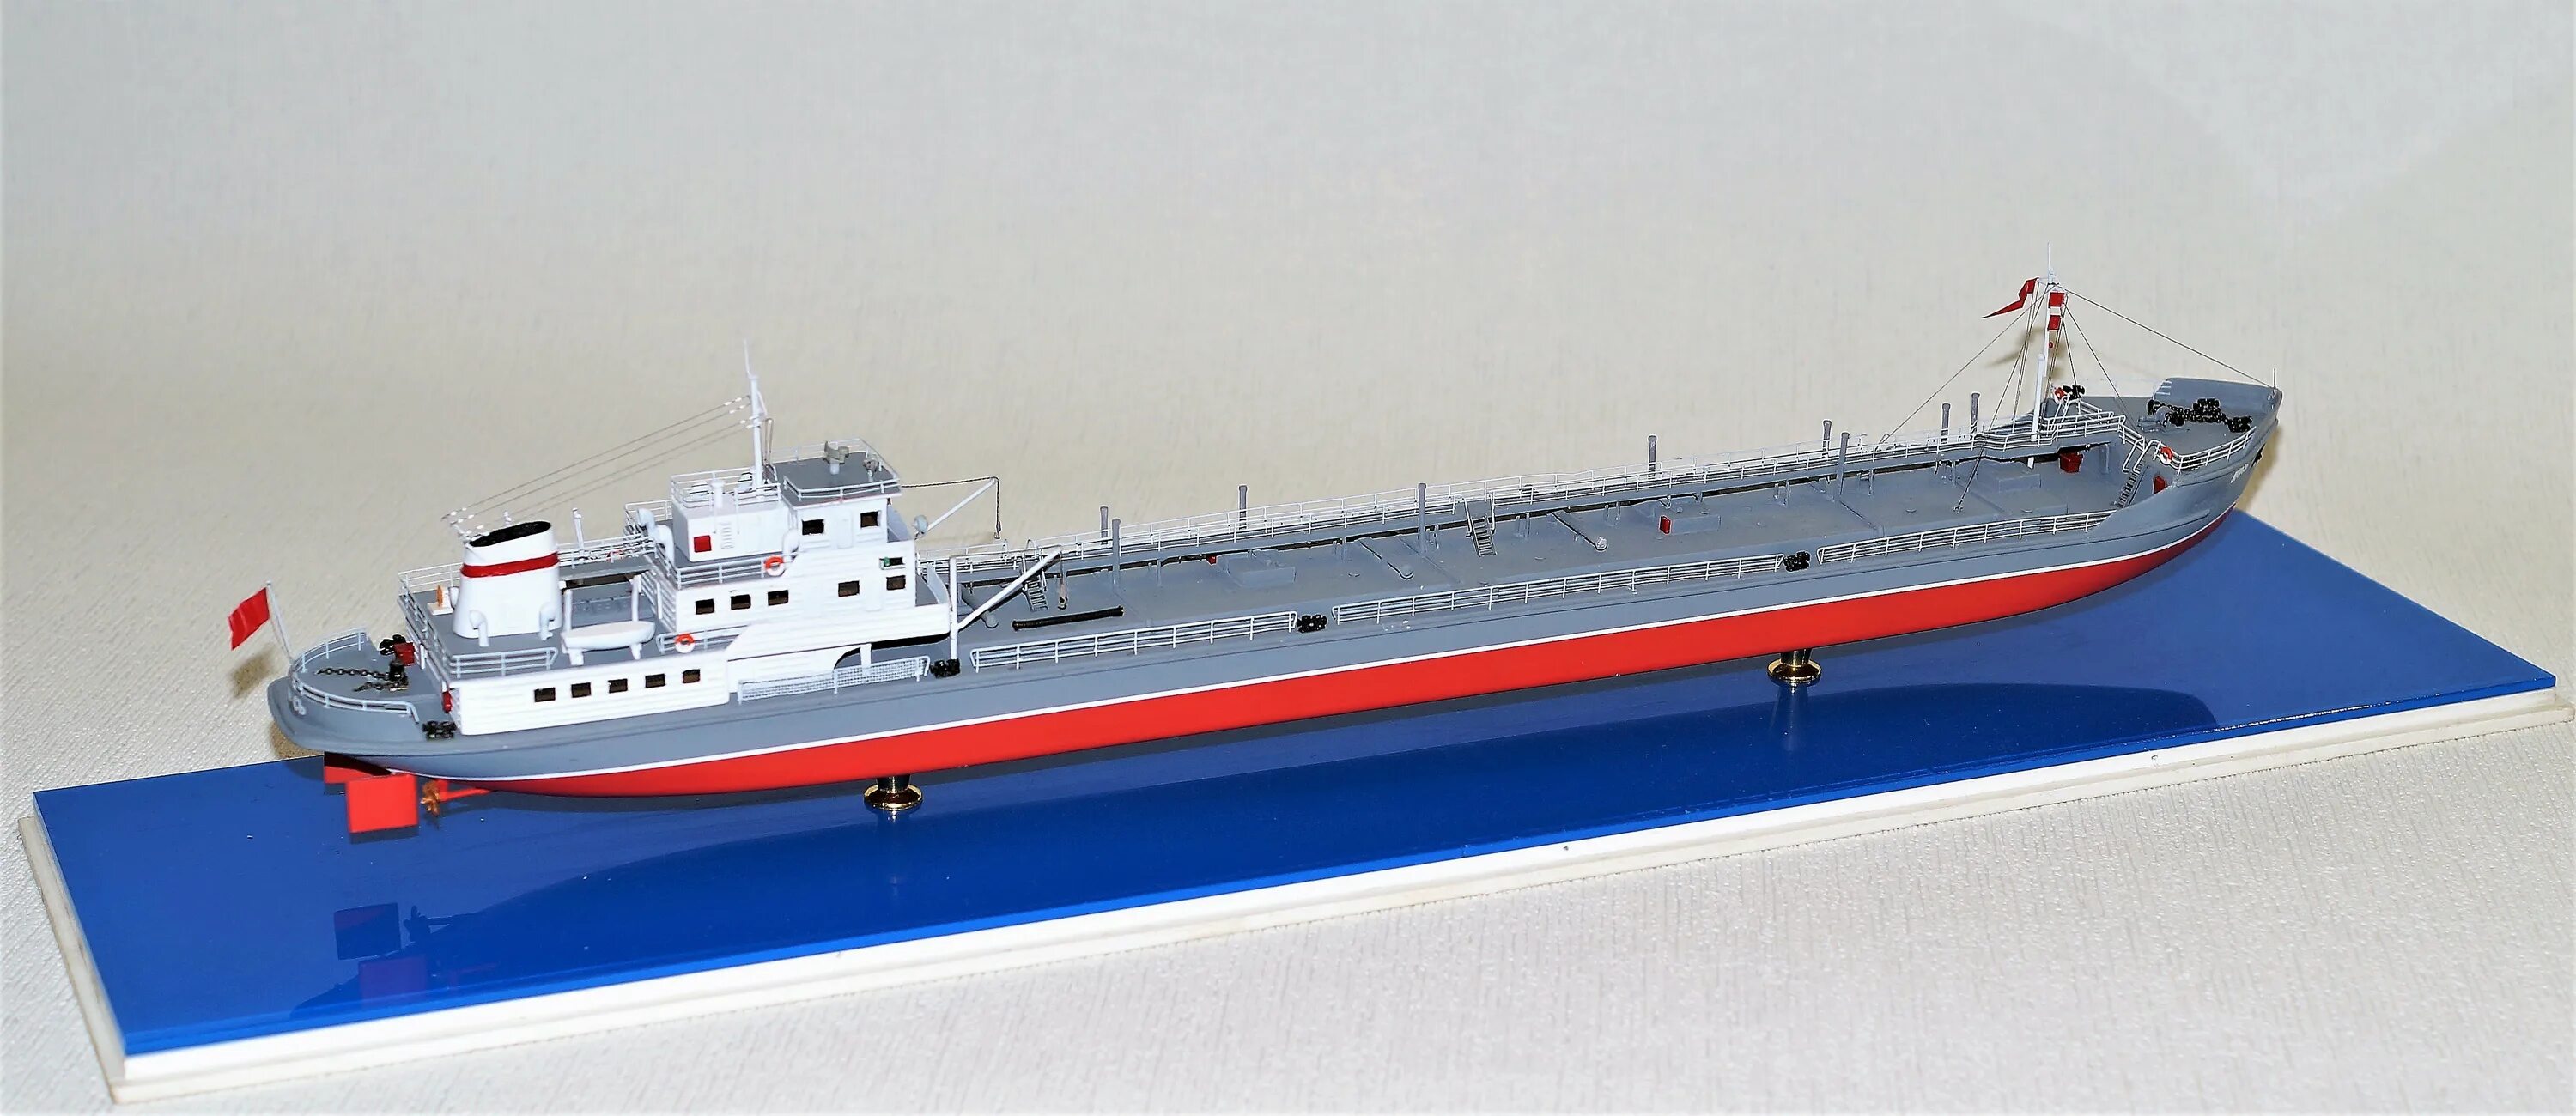 Проекты гражданских судов. Танкер типа Лось. Модель танкера на радиоуправлении. Модель гражданского судна. Танкера типа Вентспилс.